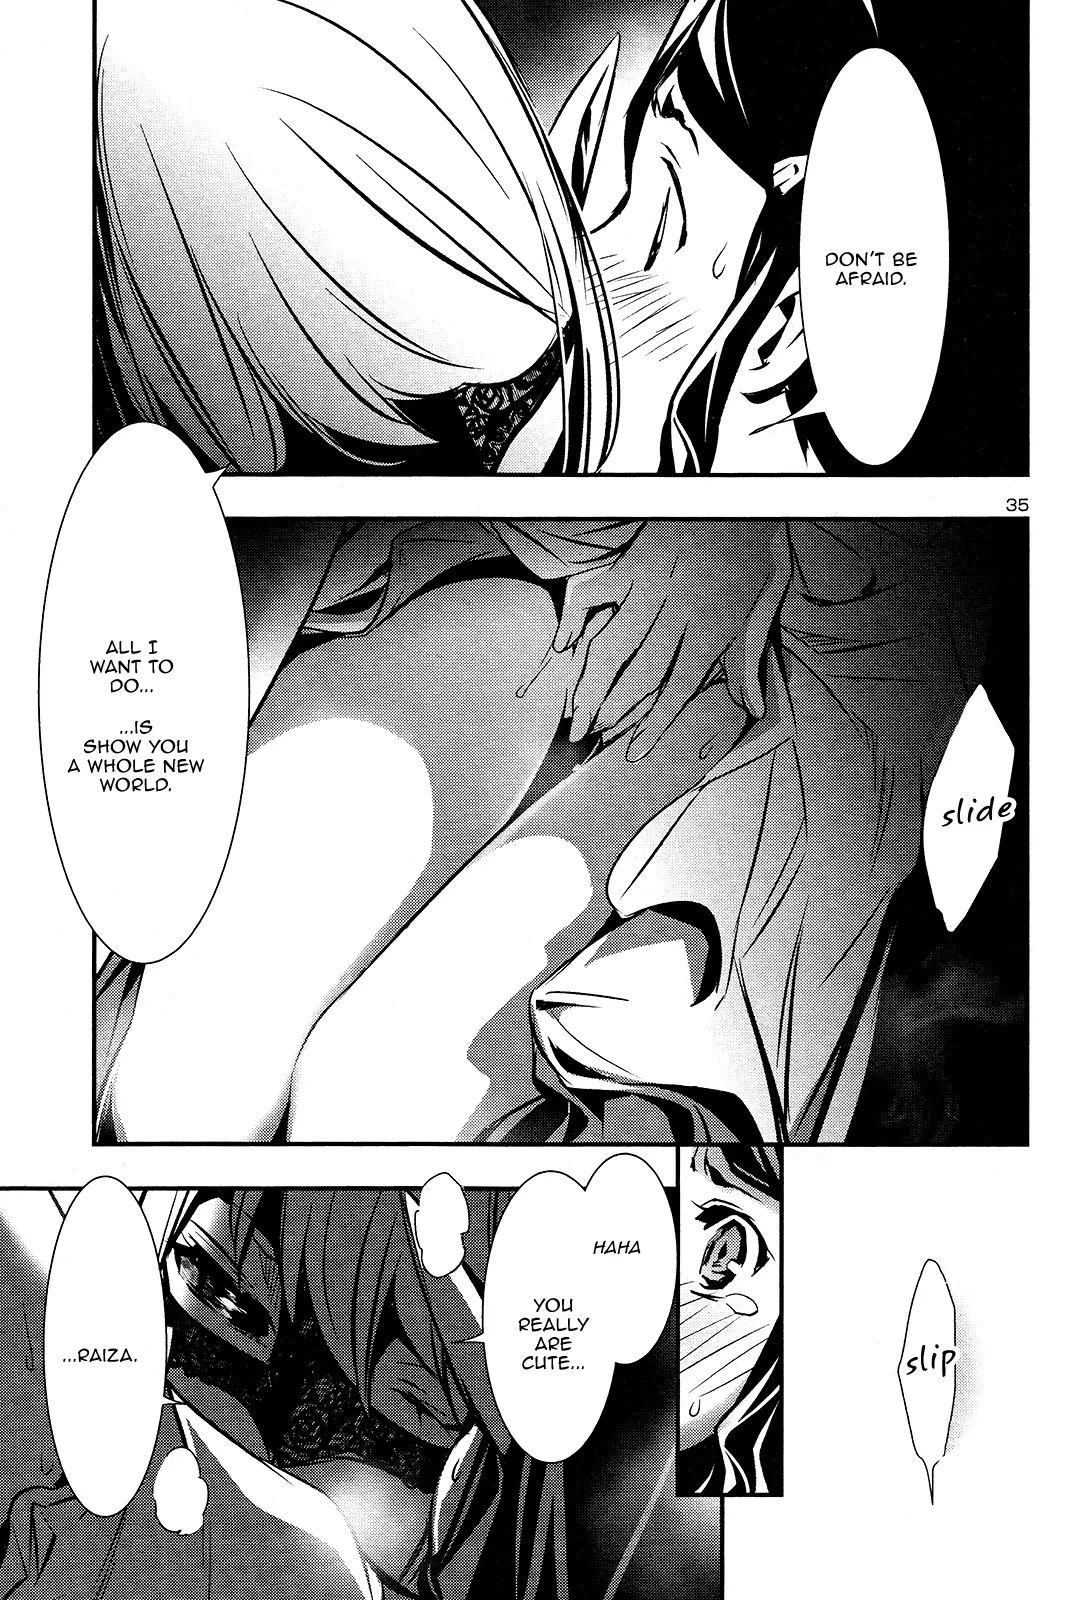 Shinju no Nectar - 35 page 35